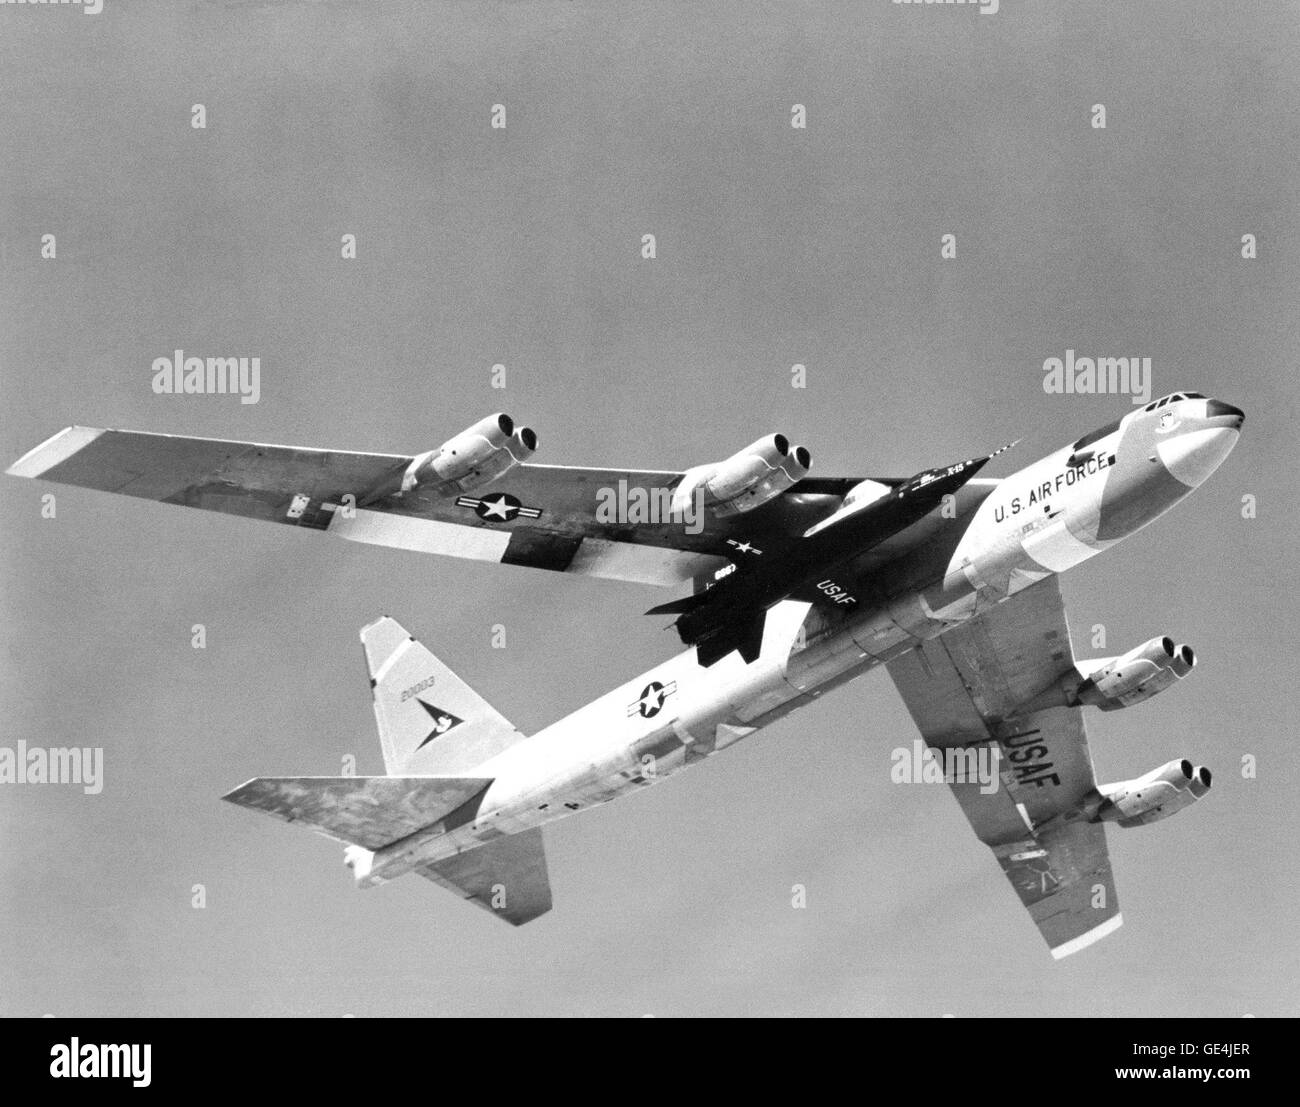 (1959) uno dei tre X-15 razzo-powered aerei di ricerca essendo portato aloft sotto l'ala della sua B-52 mothership. L'X-15 era aria lanciato dal B-52 in modo che il piano a razzo avrebbe abbastanza carburante per raggiungere la sua elevata velocità e altitudine dei punti di prova. Per il volo in aria densa di atmosfera utilizzabile, X-15 convenzionali utilizzati controlli di aerodinamica. Per il volo in aria sottile al di fuori della sensibile atmosfera terrestre, l'X-15 utilizzato una reazione del sistema di controllo. Il perossido di idrogeno razzi di spinta si trova sul naso del velivolo provvisto di tono e controllo di imbardata. Quelli sulle ali fornite rol Foto Stock